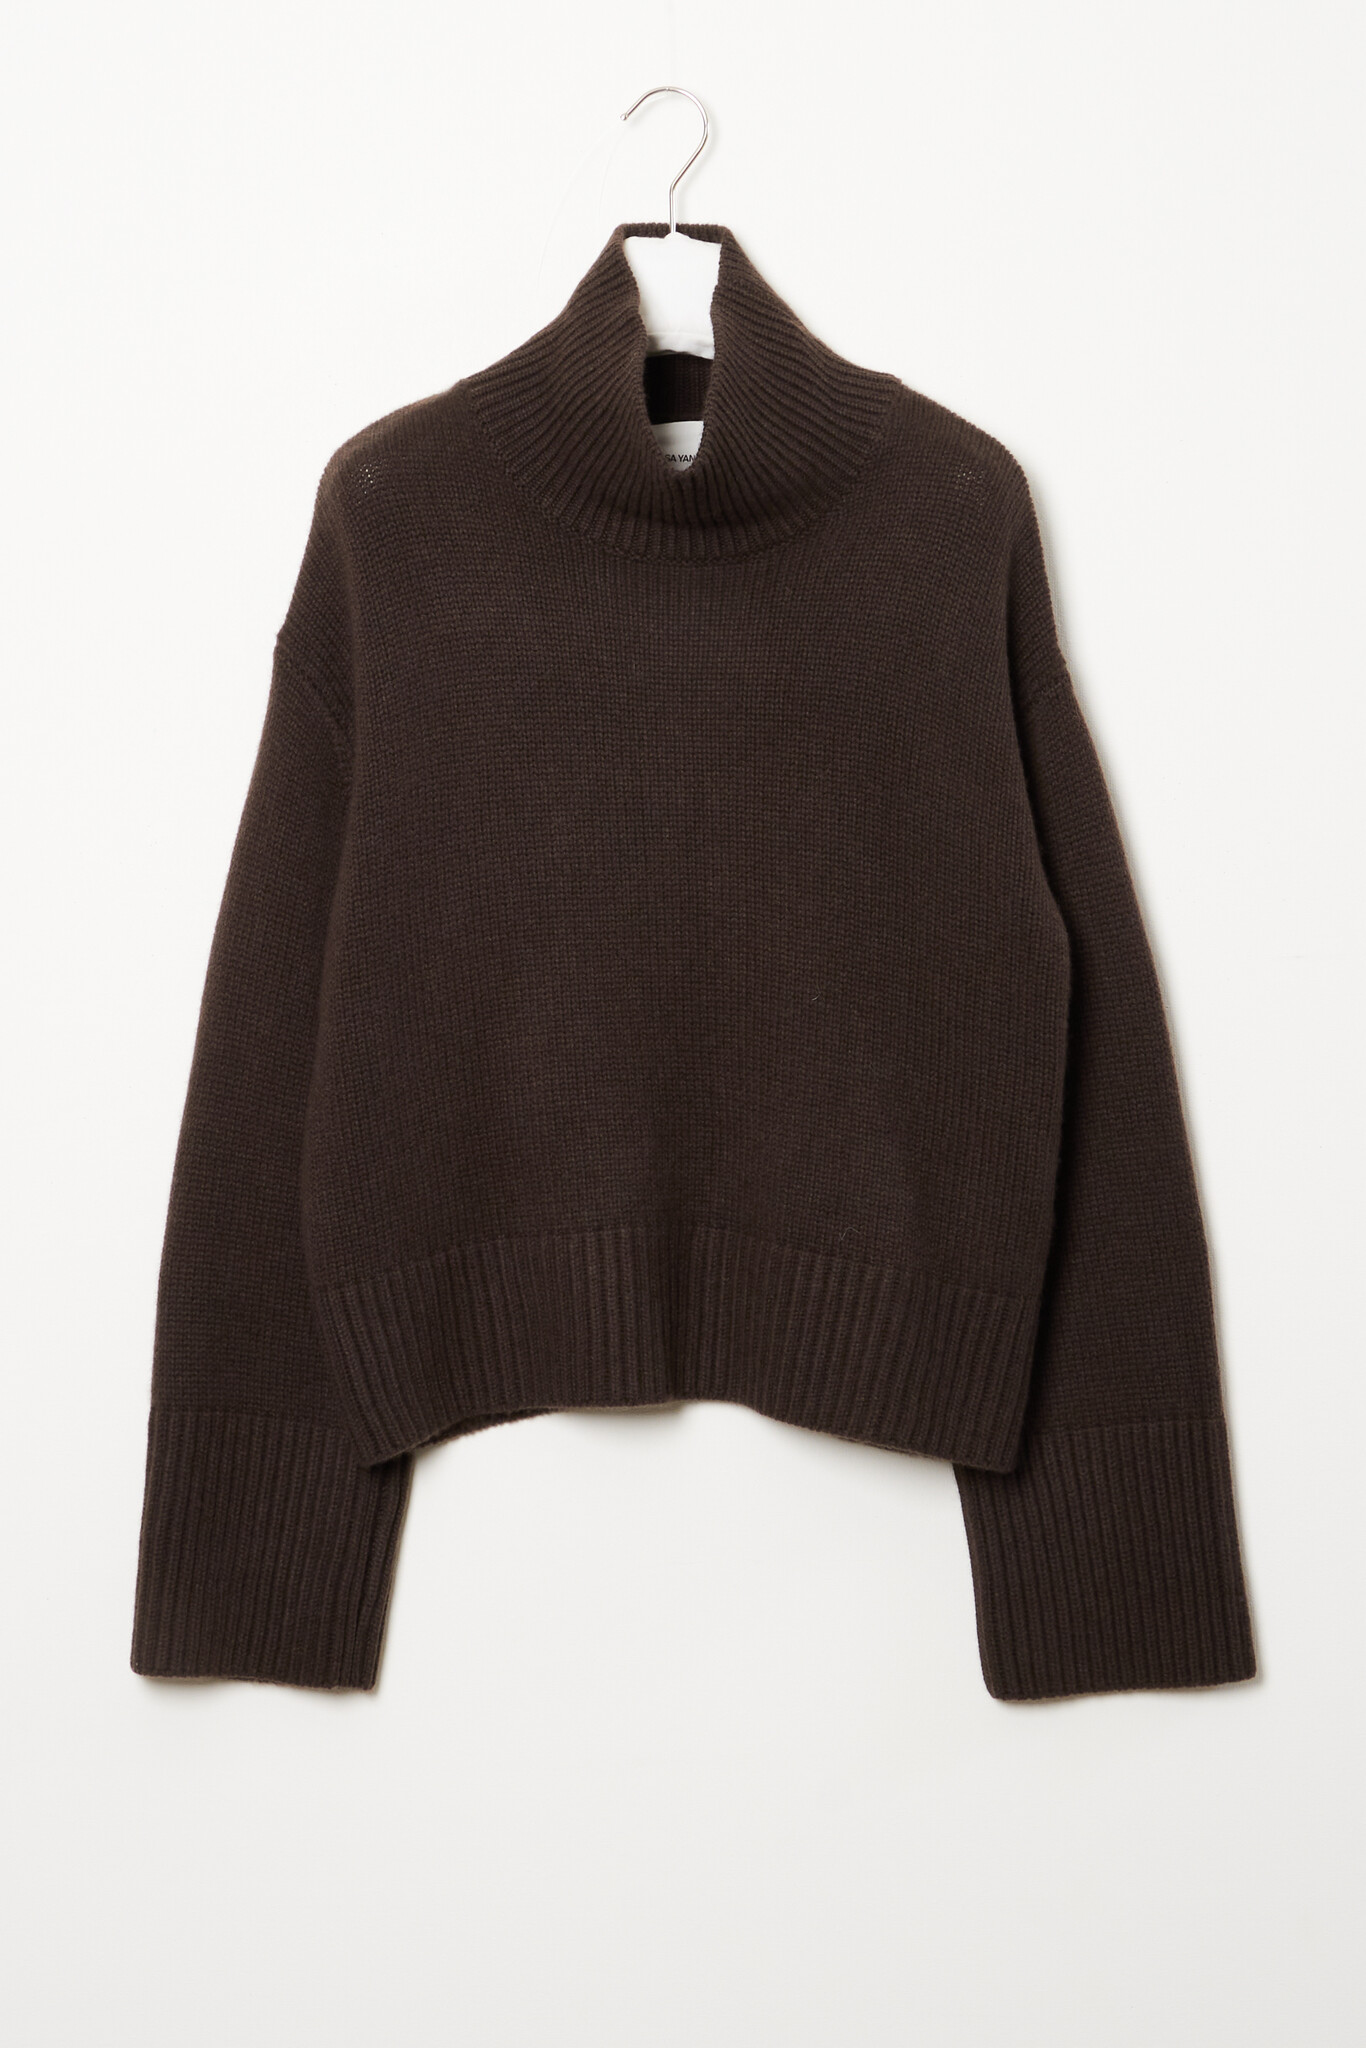 Lisa Yang - Fleur sweater